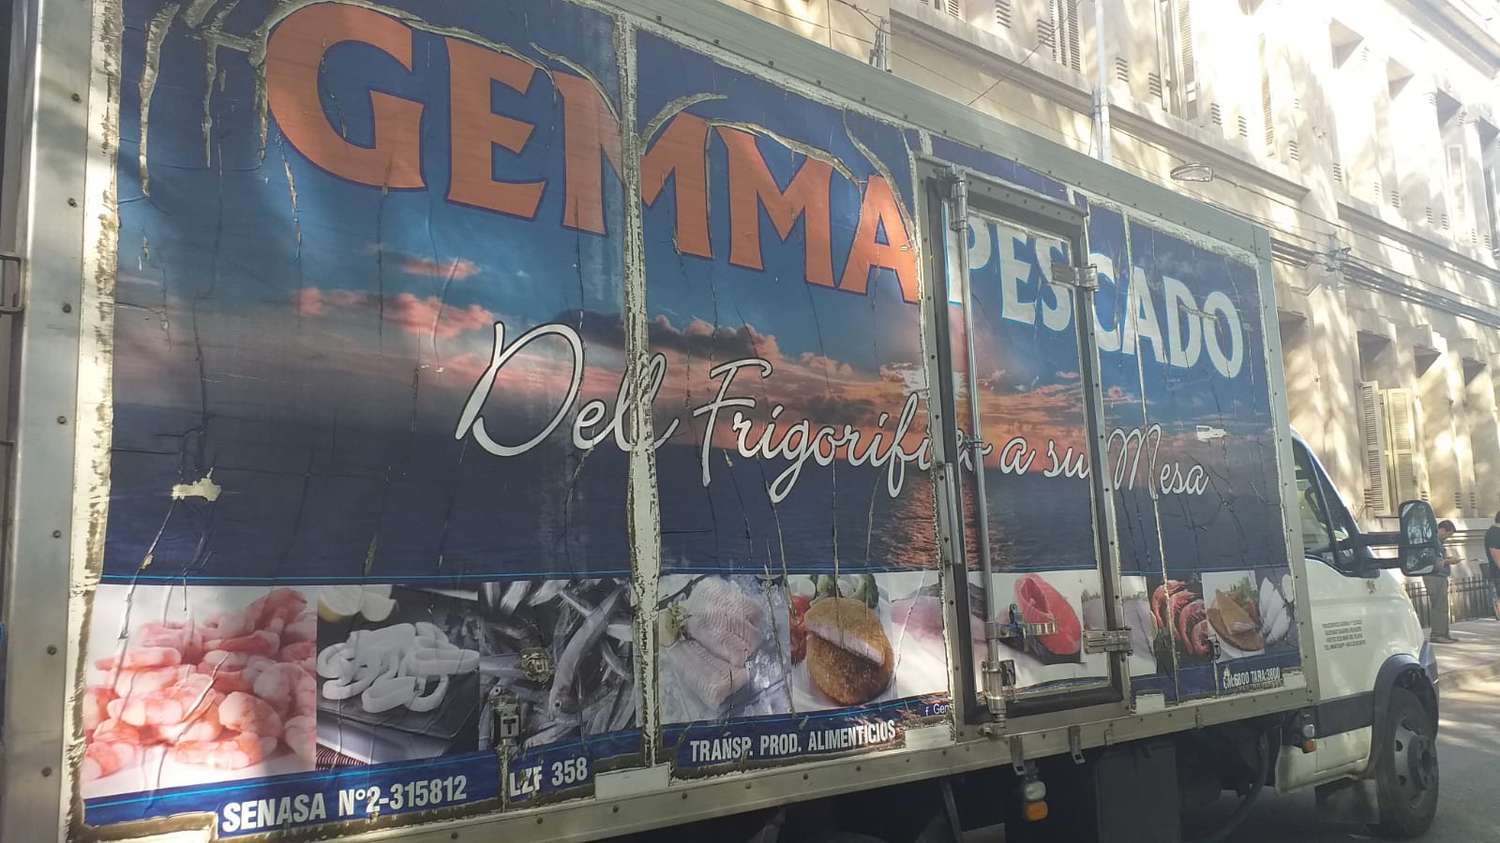 Camión de Pescados Gemma Mar del Plata